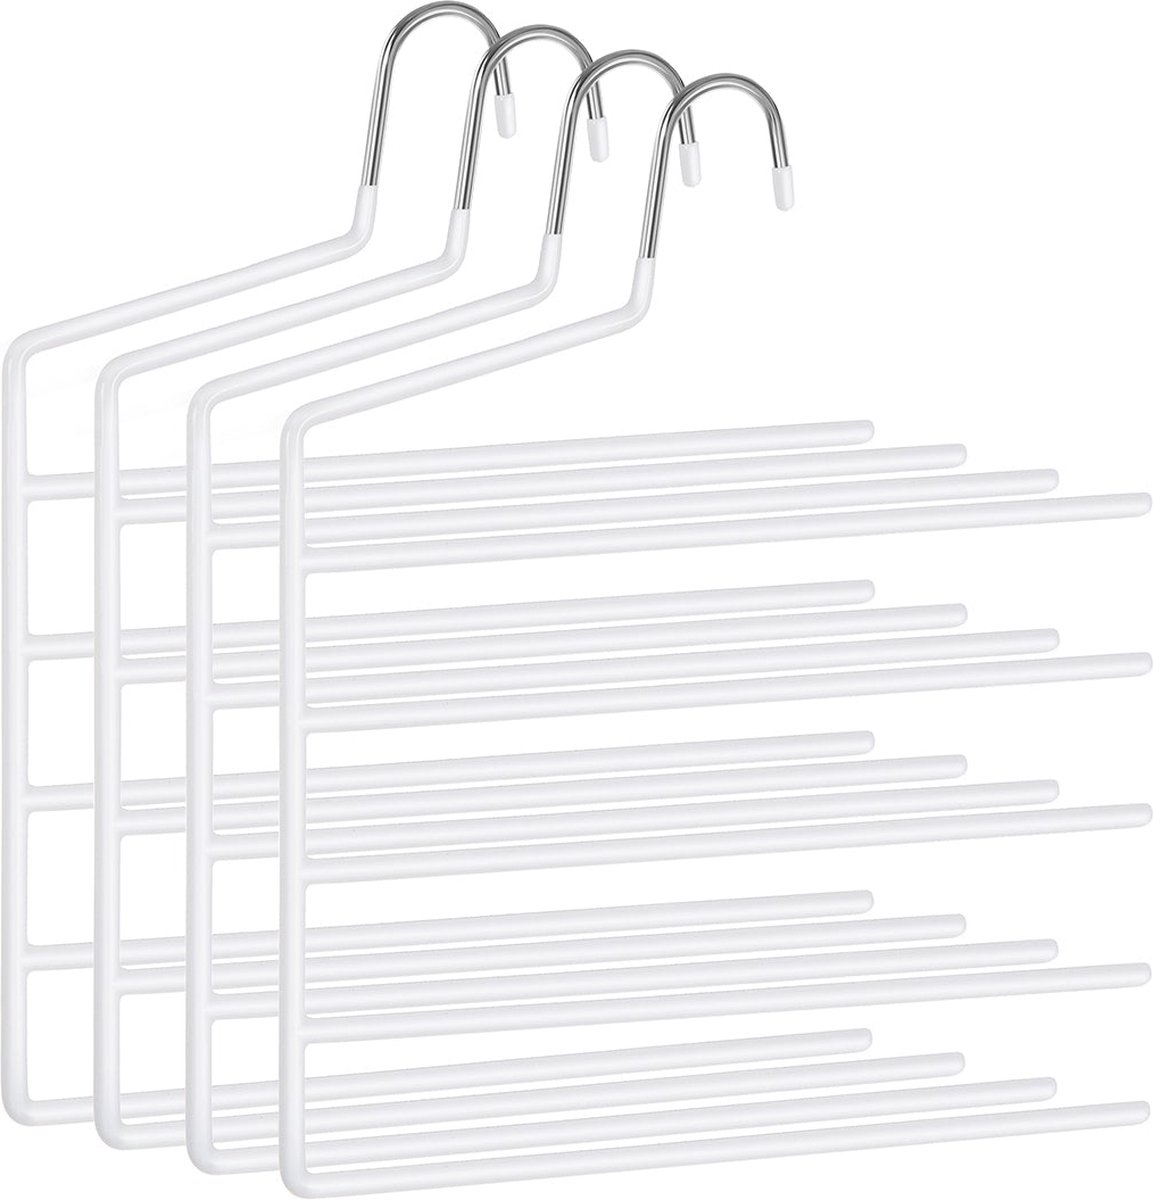 Broekhanger - Kledinghangers - Hangers - Ruimtebesparend - Set van 4 - Meerdere hangers - Open uiteinde - Antislip - Wit